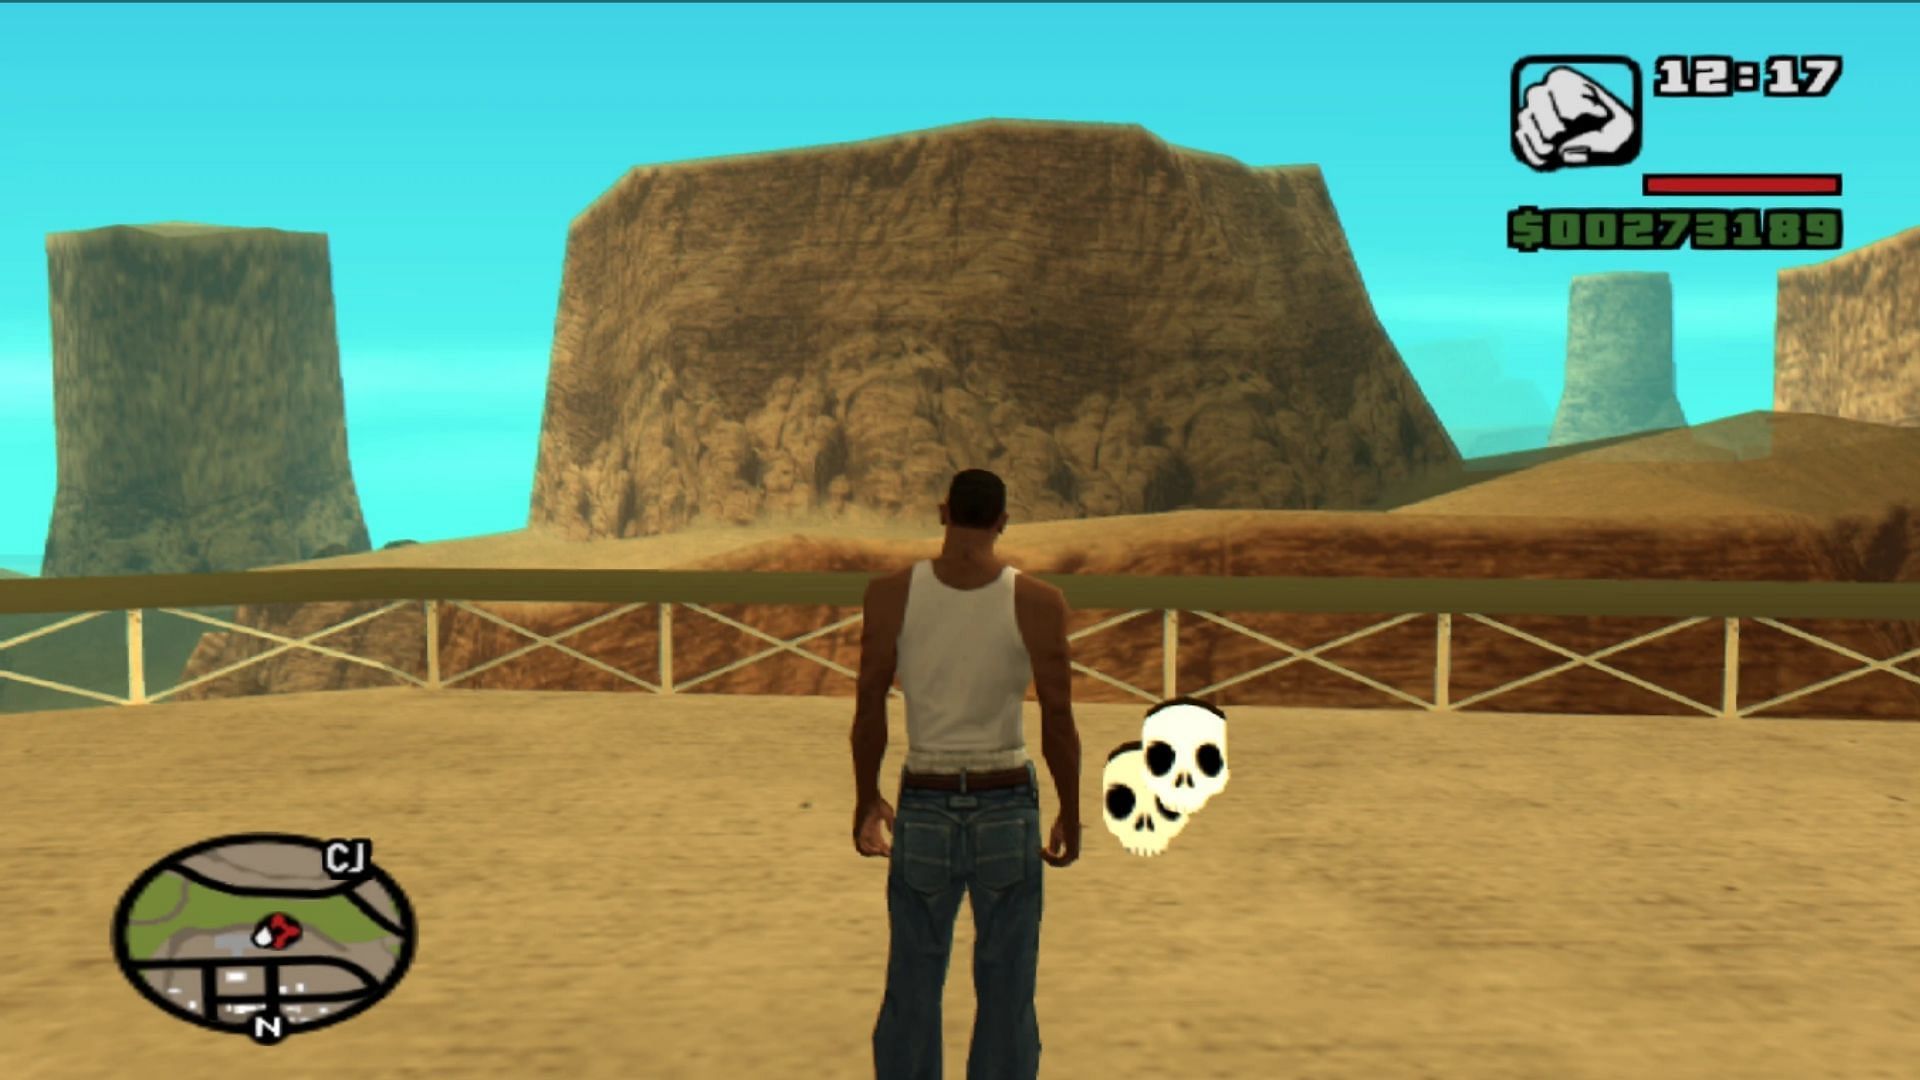 Grand Theft Auto: San Andreas San Andreas Multiplayer Los Santos